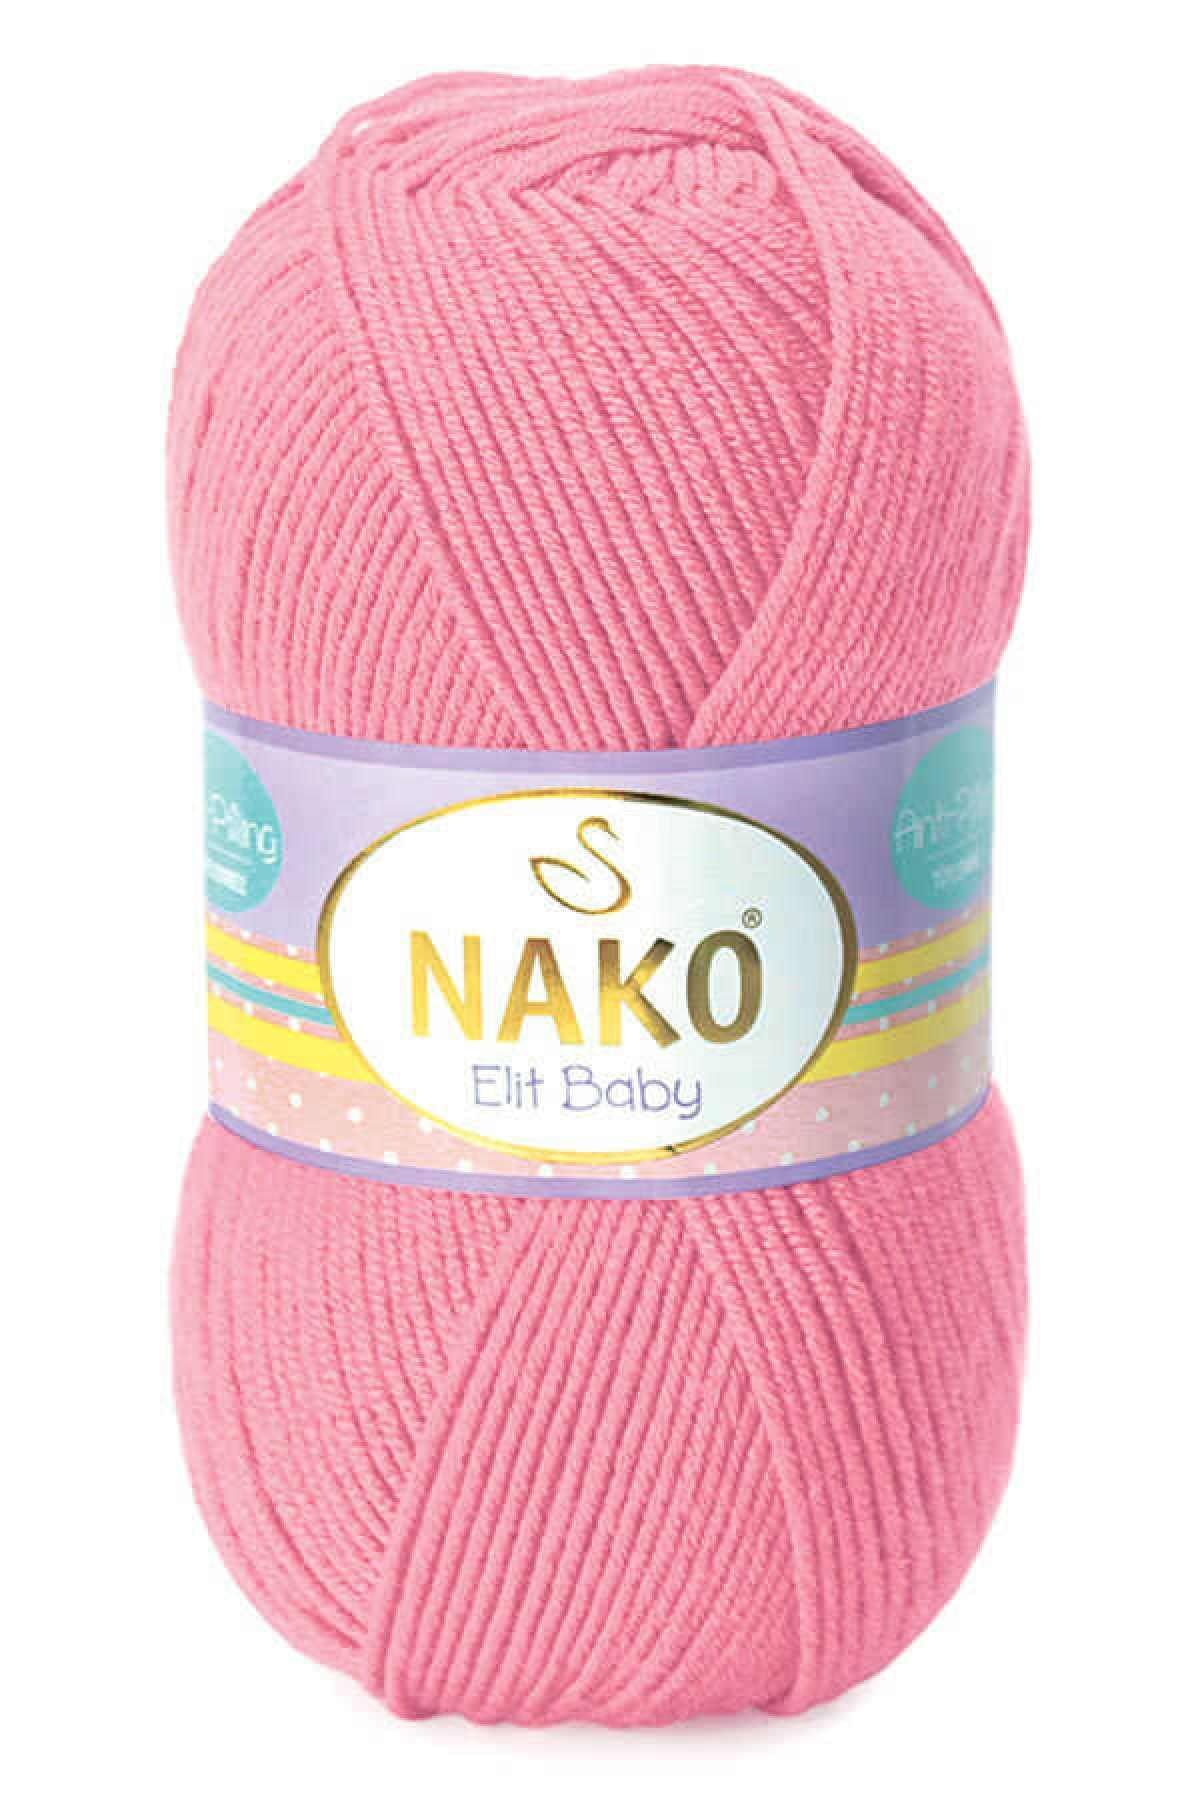 Nako Elit Baby (anti-pilling) El Örgü Ipi Ipliği Yünü Renk Kodu:6837 Pembe